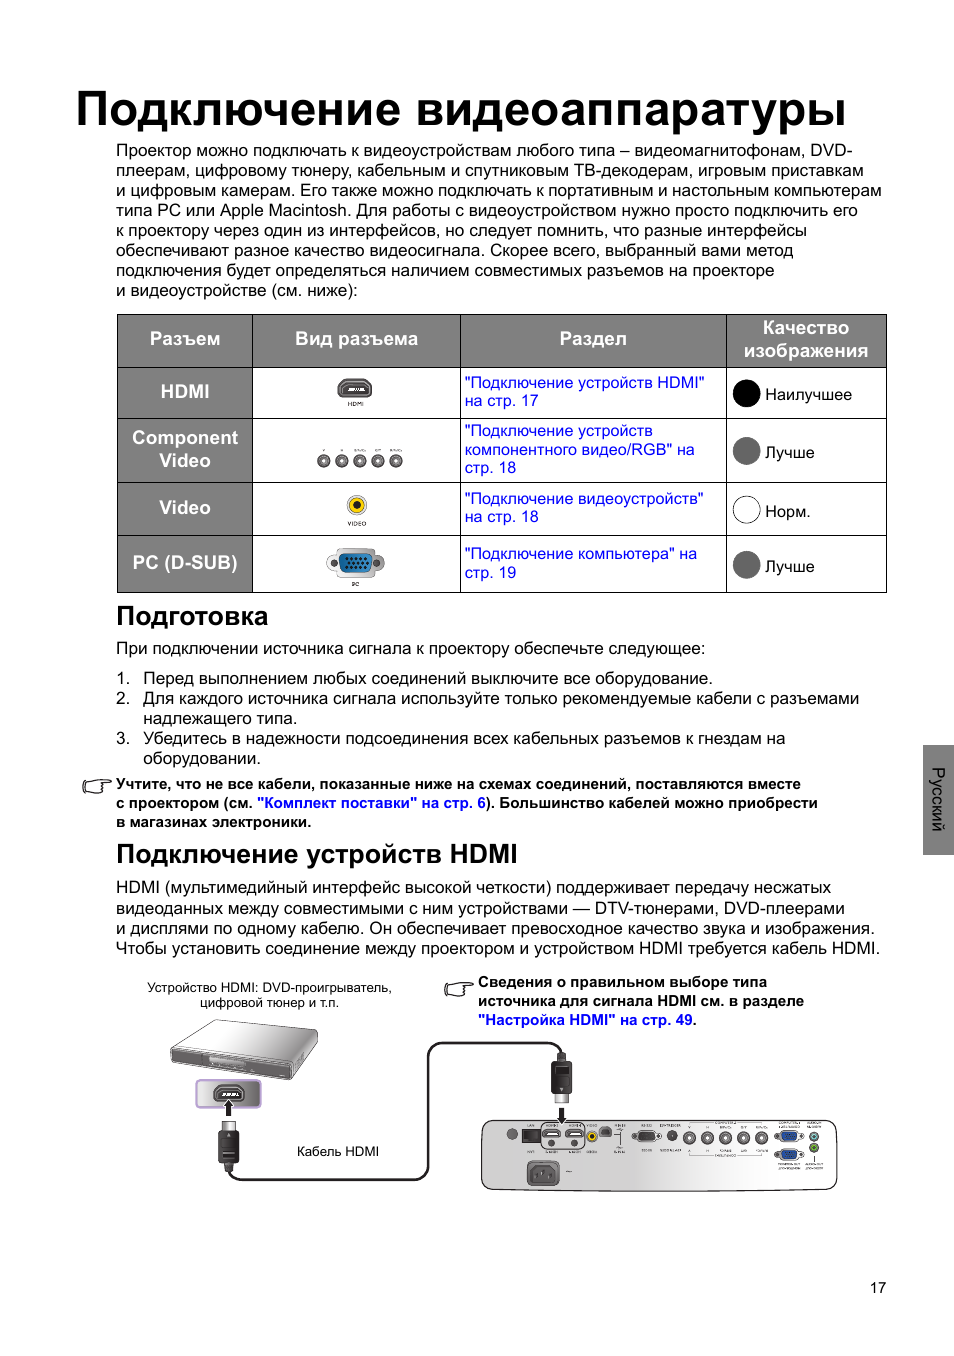 Как подключить телефон к проектору через usb и не только тарифкин.ру
как подключить телефон к проектору через usb и не только